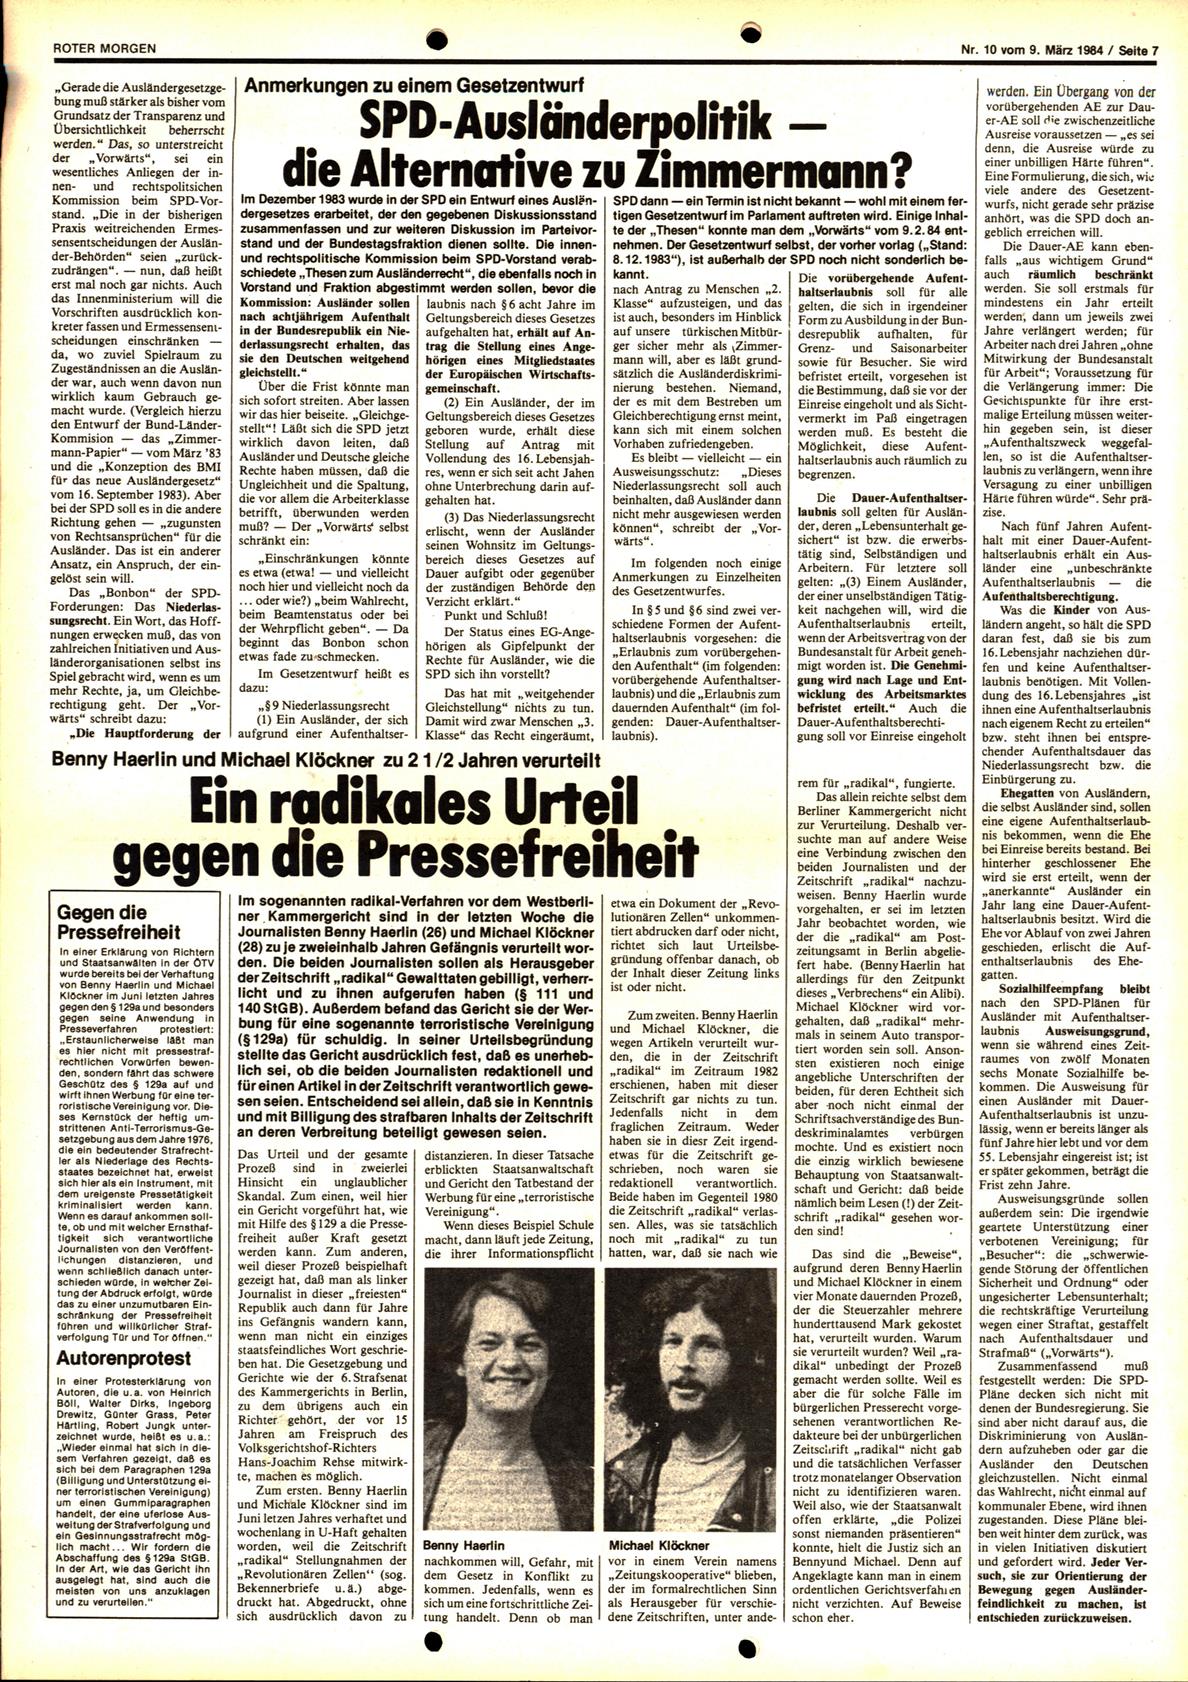 Roter Morgen, 18. Jg., 9. März 1984, Nr. 10, Seite 7